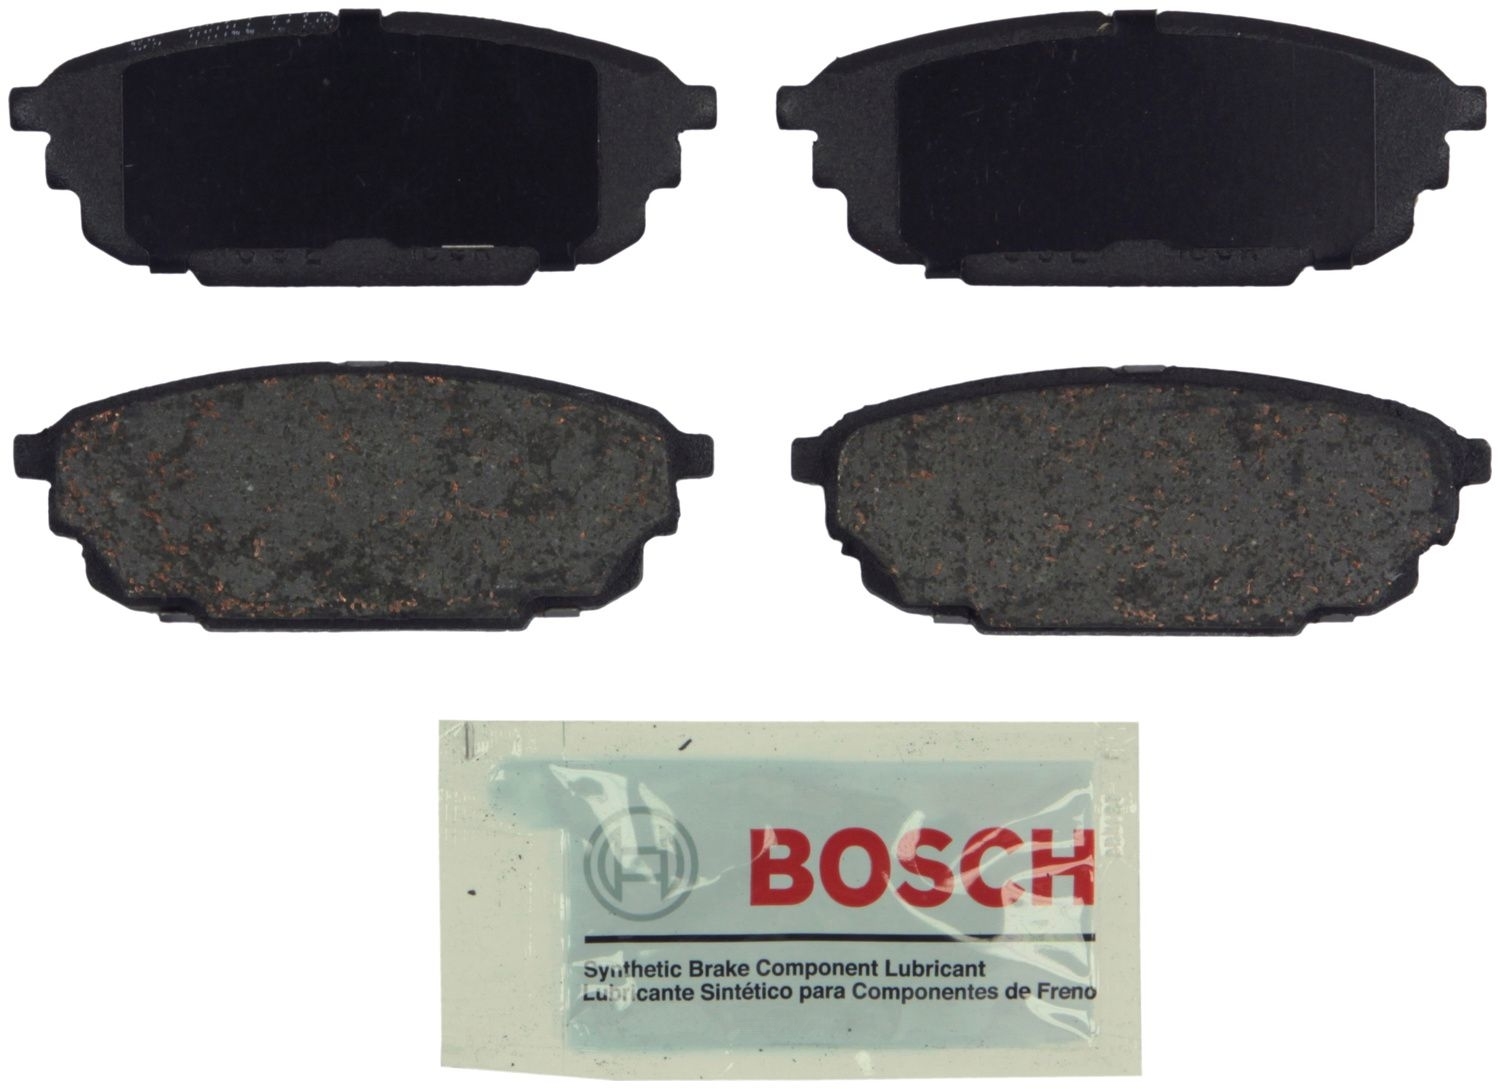 BOSCH BRAKE - Bosch Blue Ceramic Brake Pads - BQC BE892